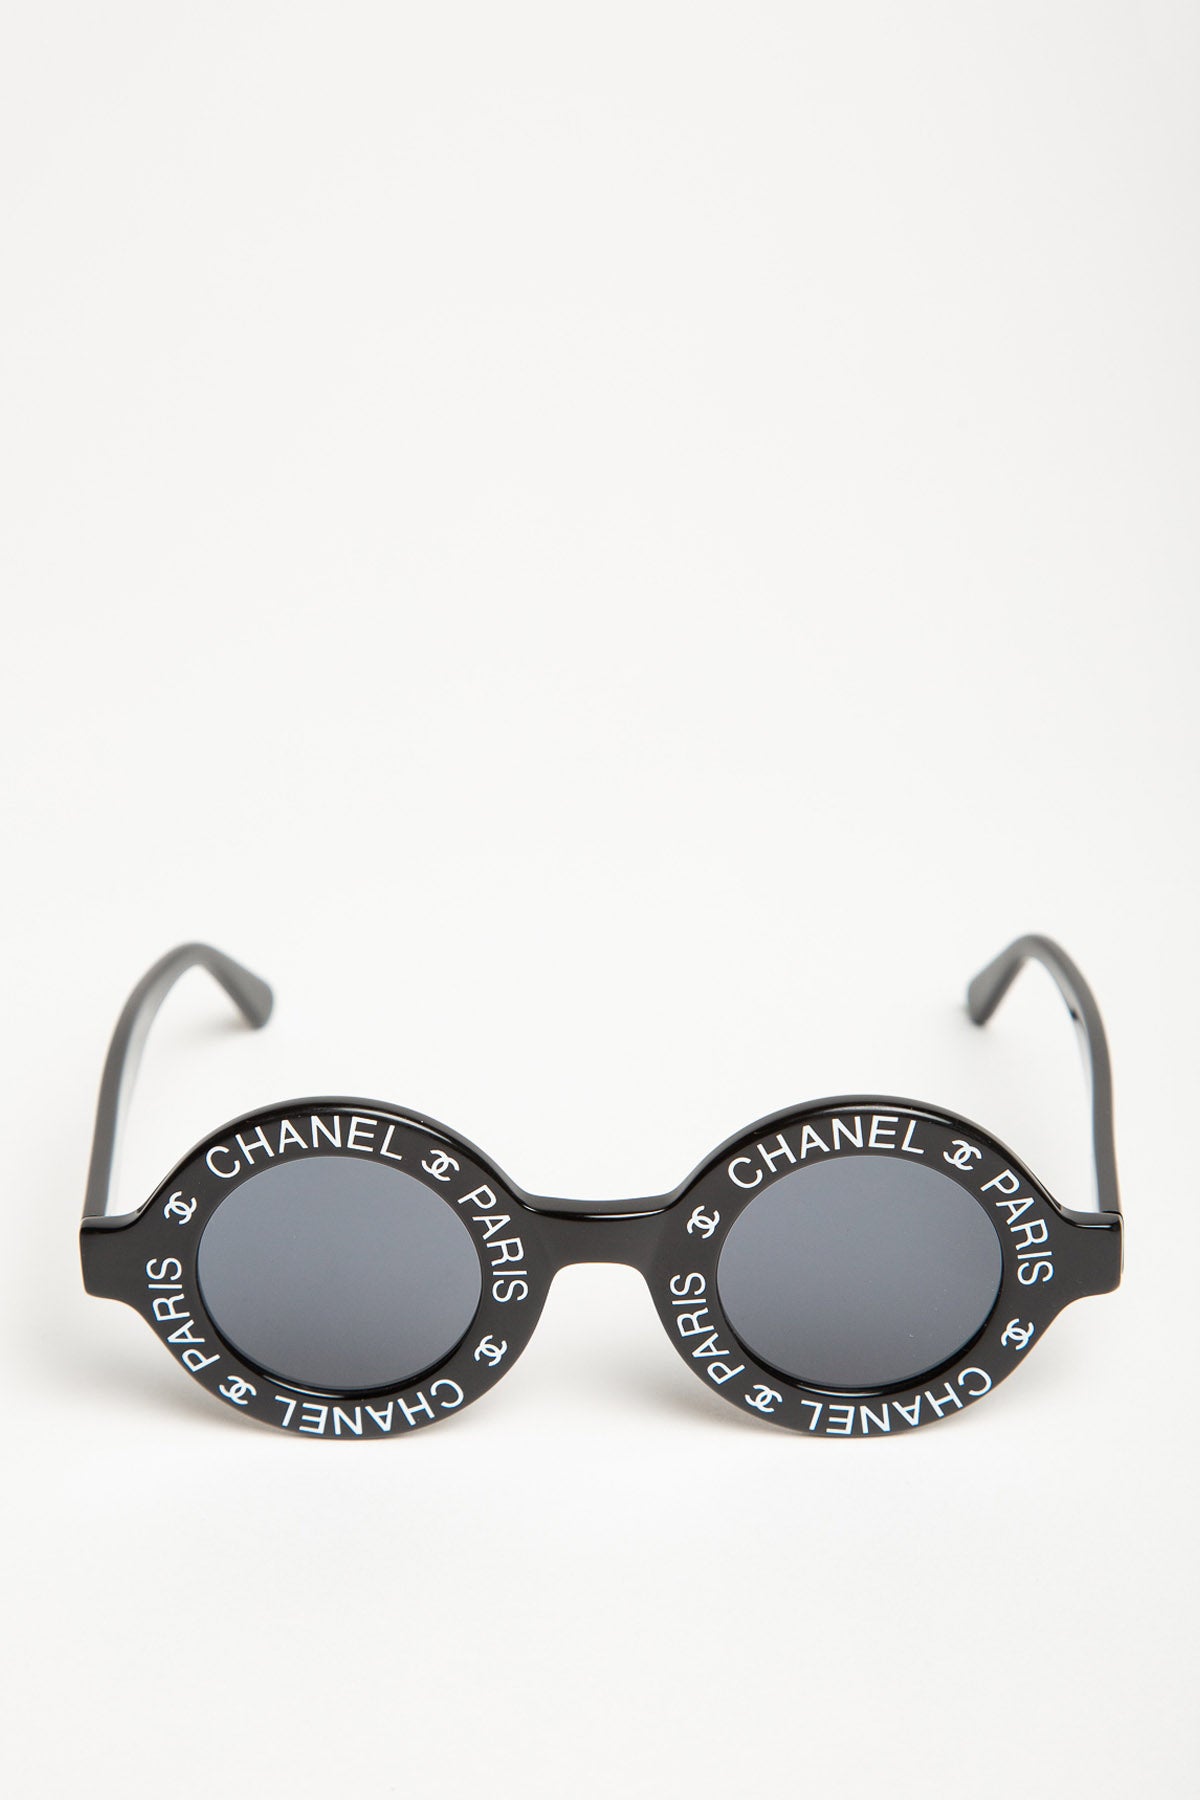 Vintage Chanel | Chanel Paris Sunglasses